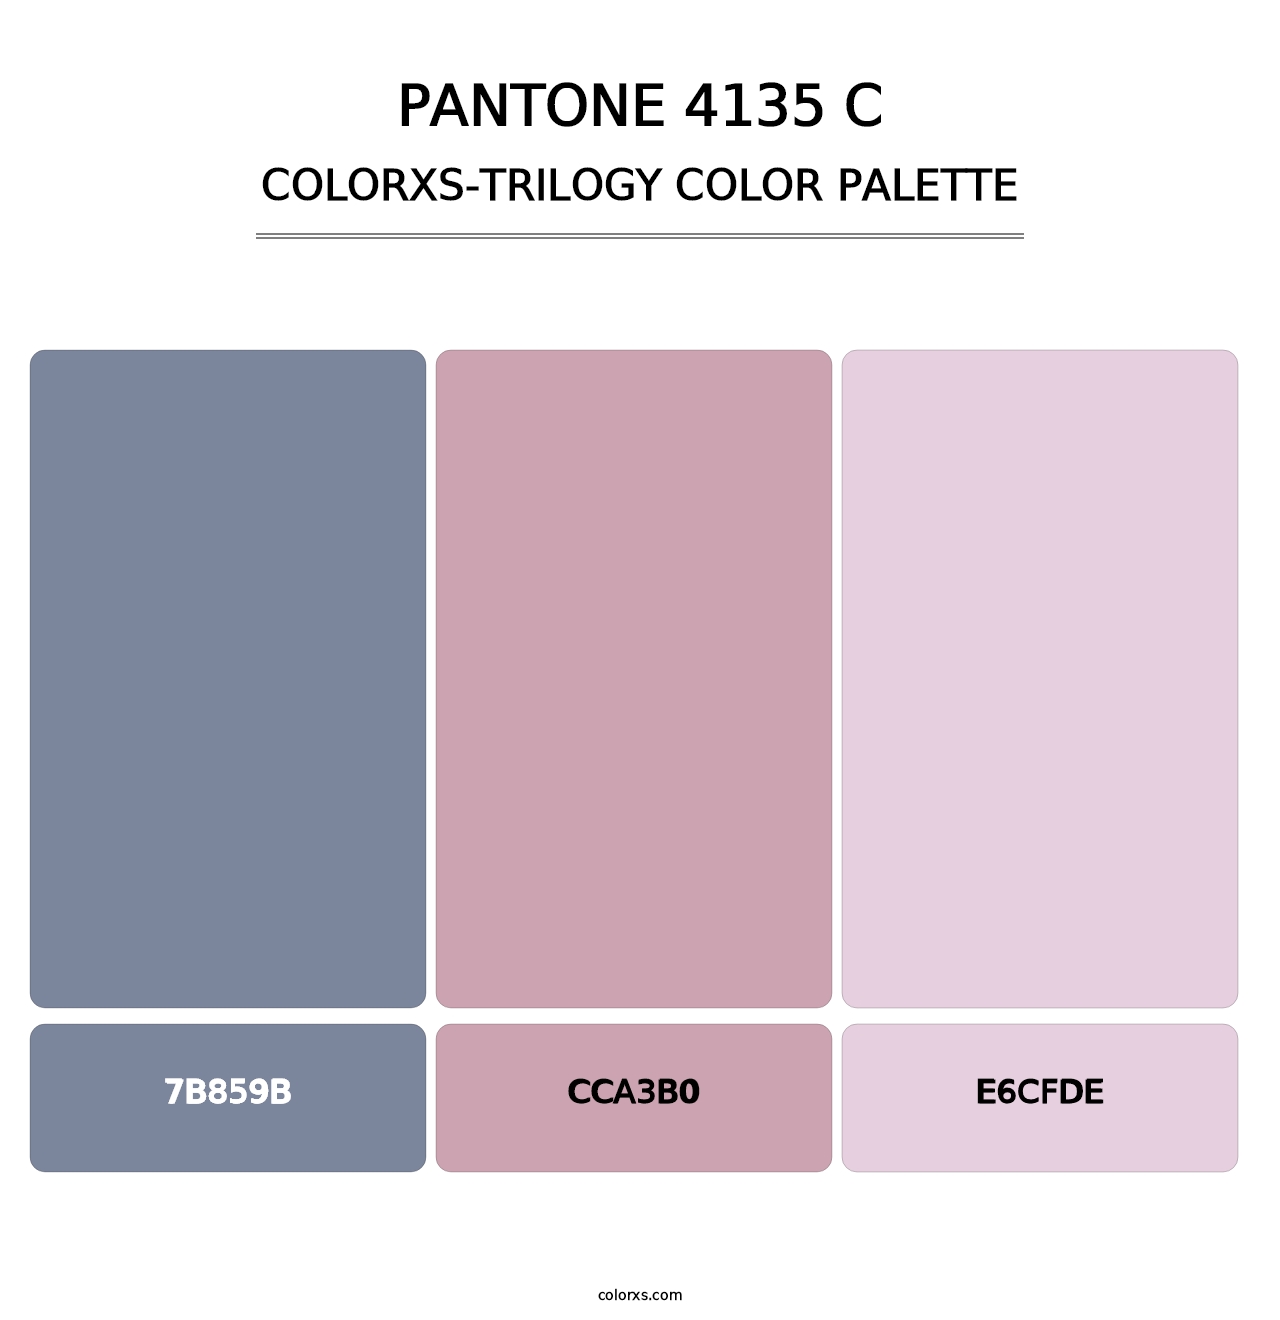 PANTONE 4135 C - Colorxs Trilogy Palette